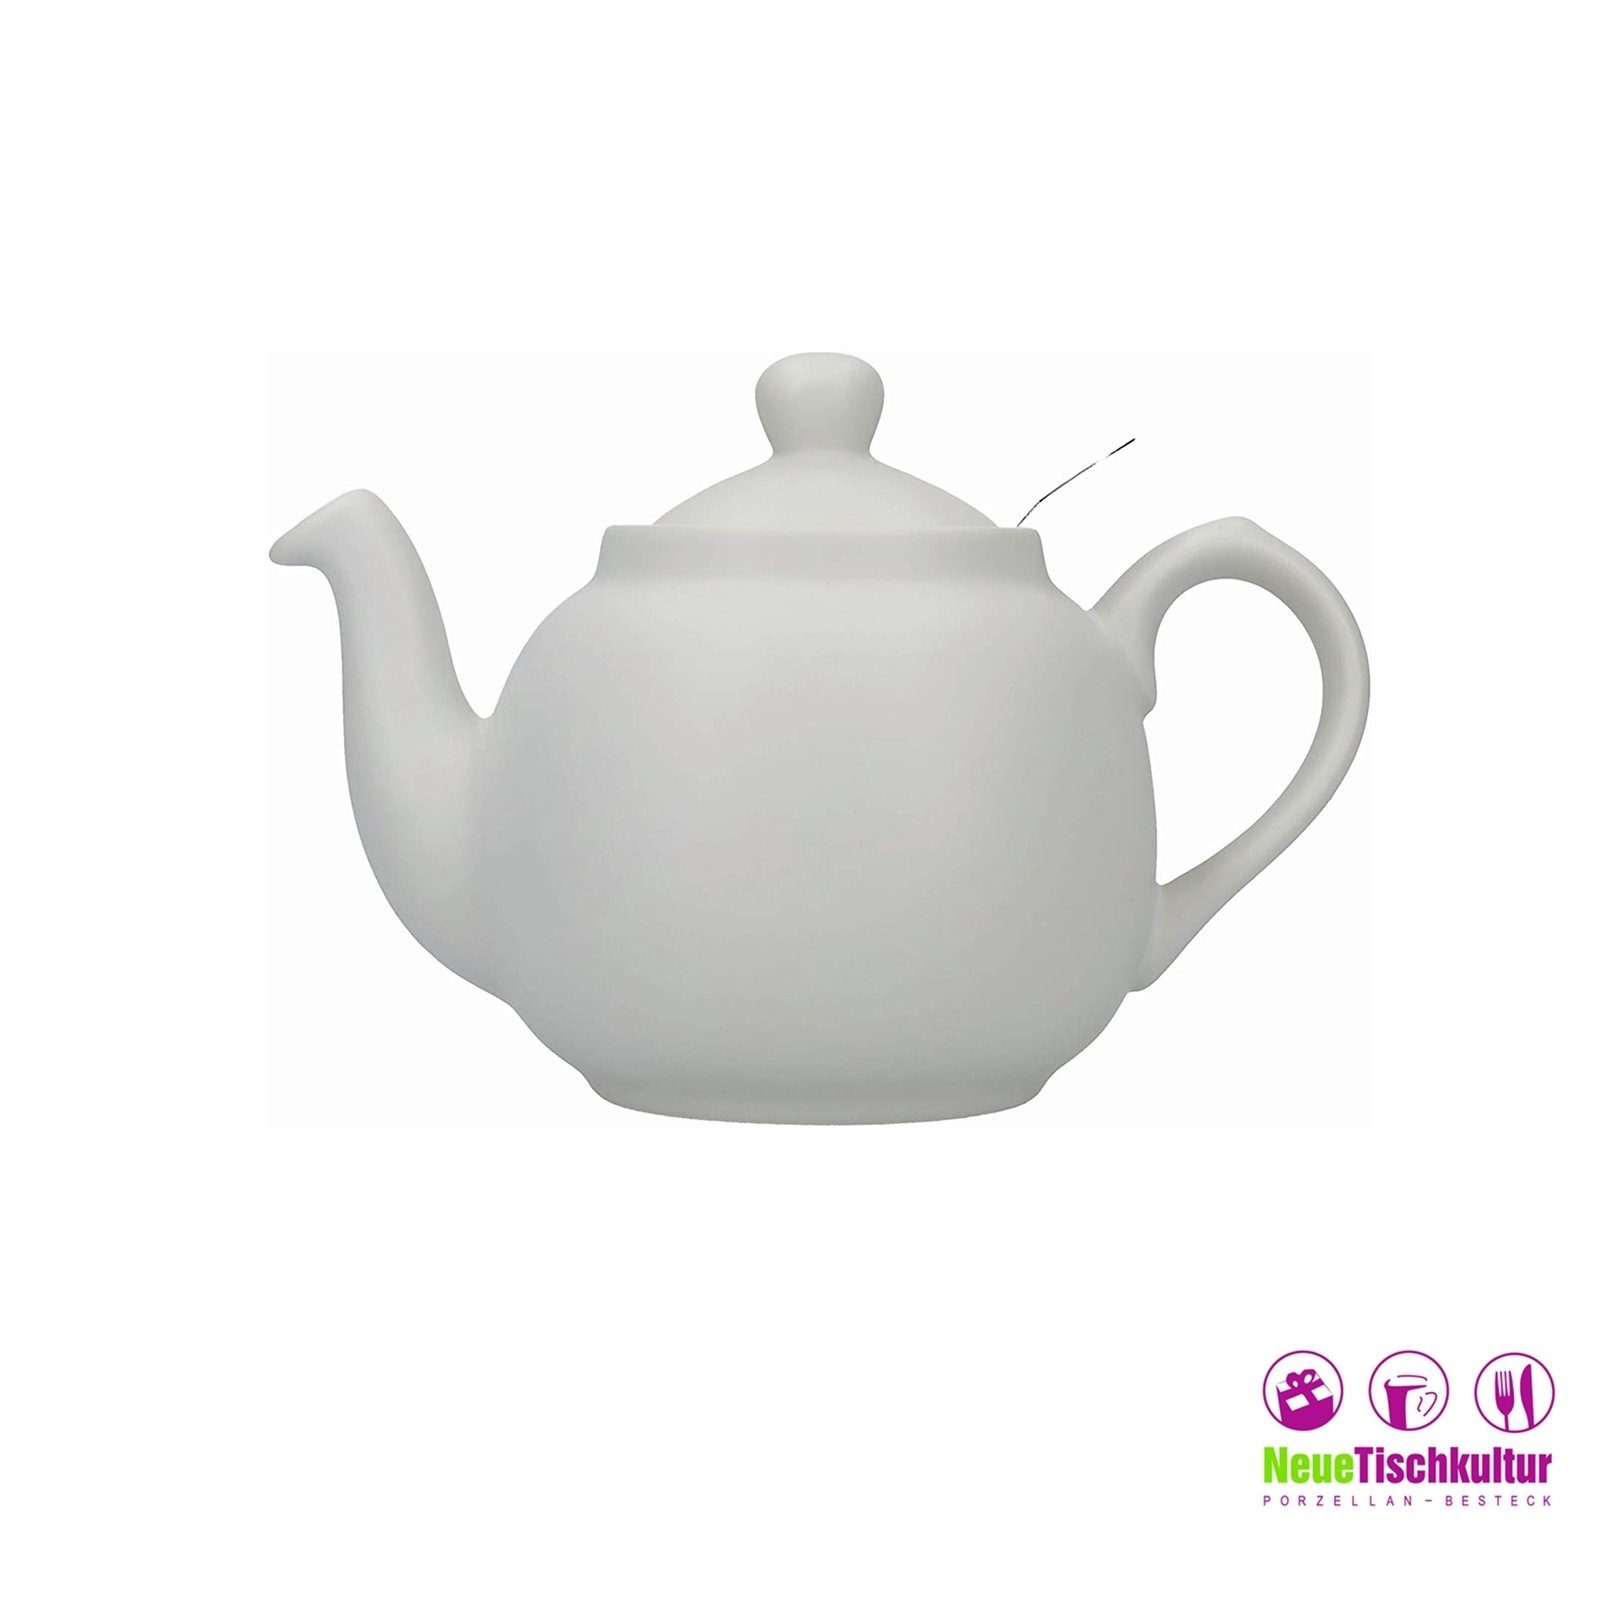 6 Neuetischkultur 1.5 Teekanne, l Tassen, Nordisch Teekanne für Keramik/Edelstahlsieb, Grau